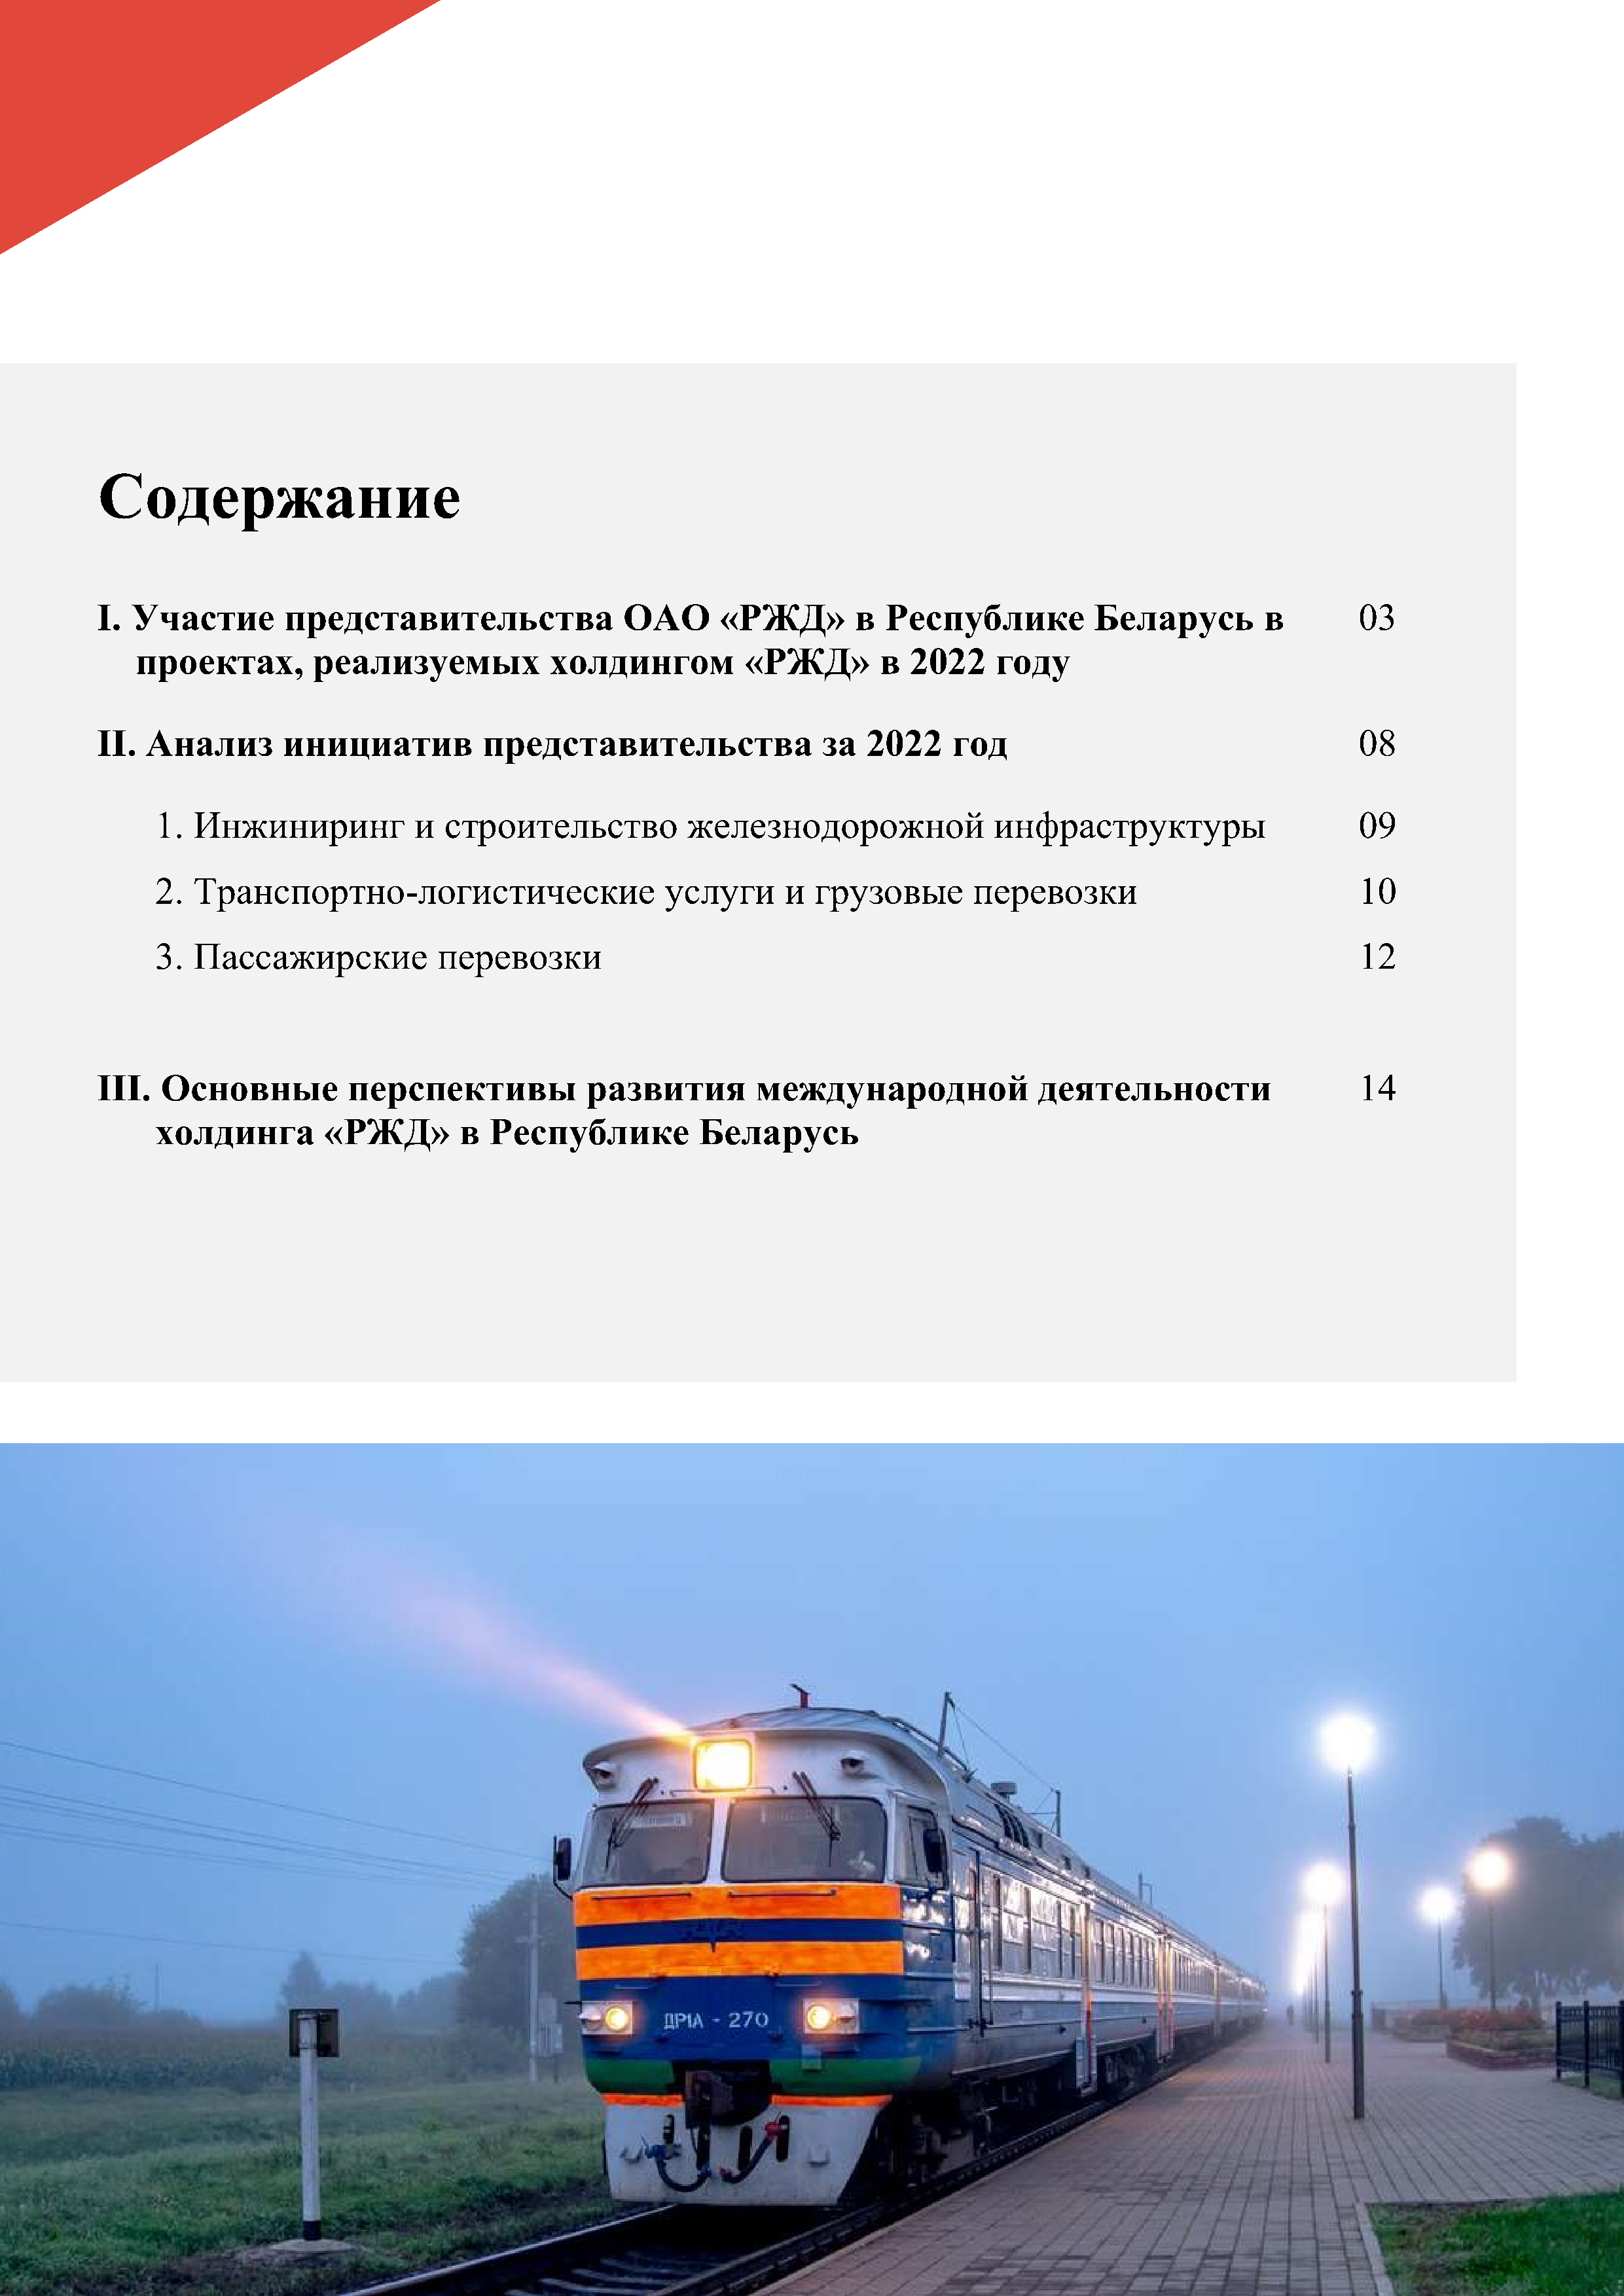 Отчет о работе представительства ОАО «РЖД» в Республике Беларусь за 2022 год (Страница 1)